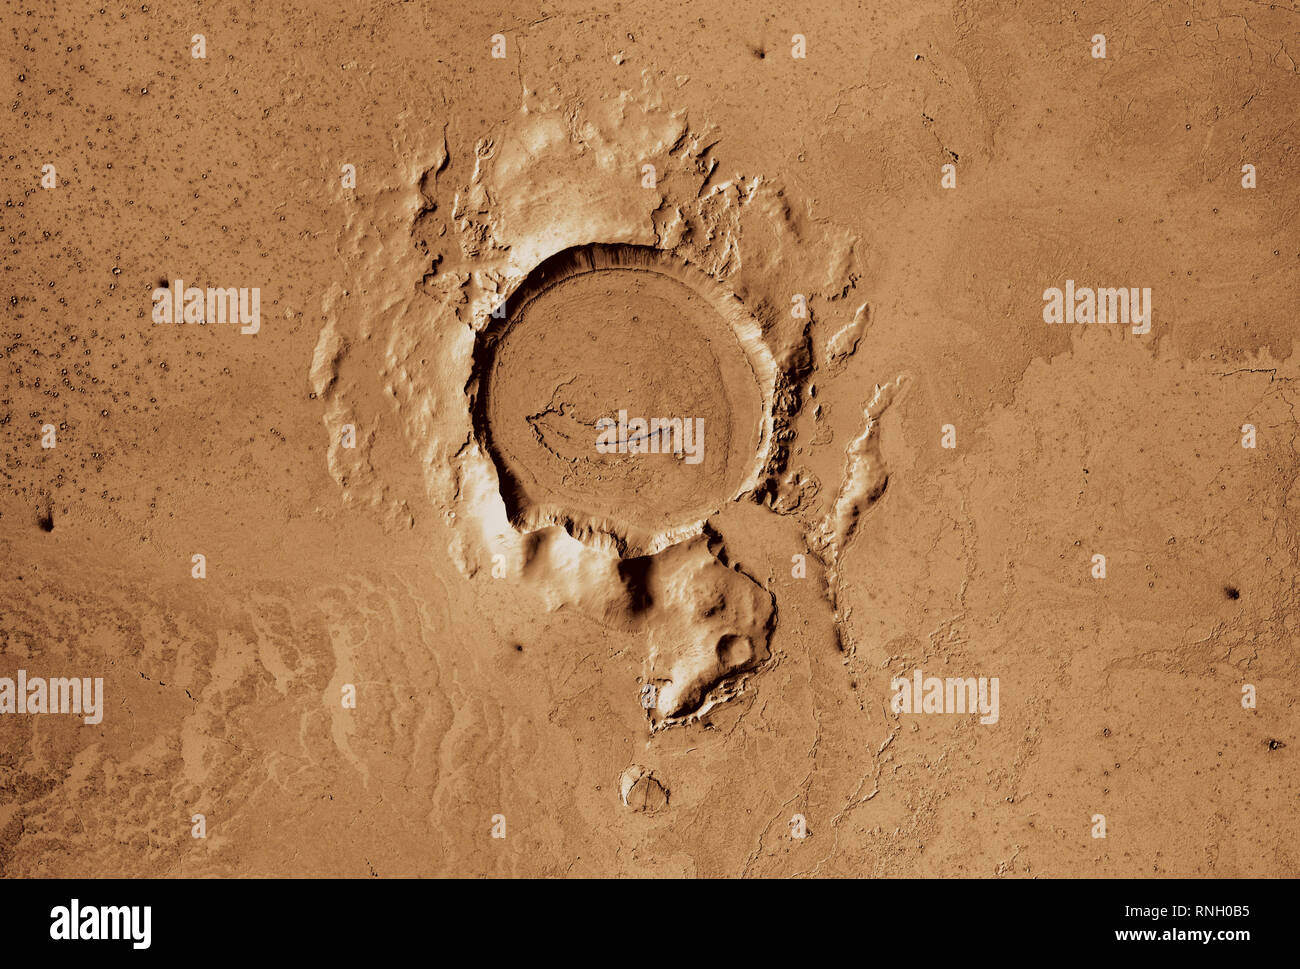 Vue de la surface de la planète Mars montrant un cratère Elysium Planitia Banque D'Images